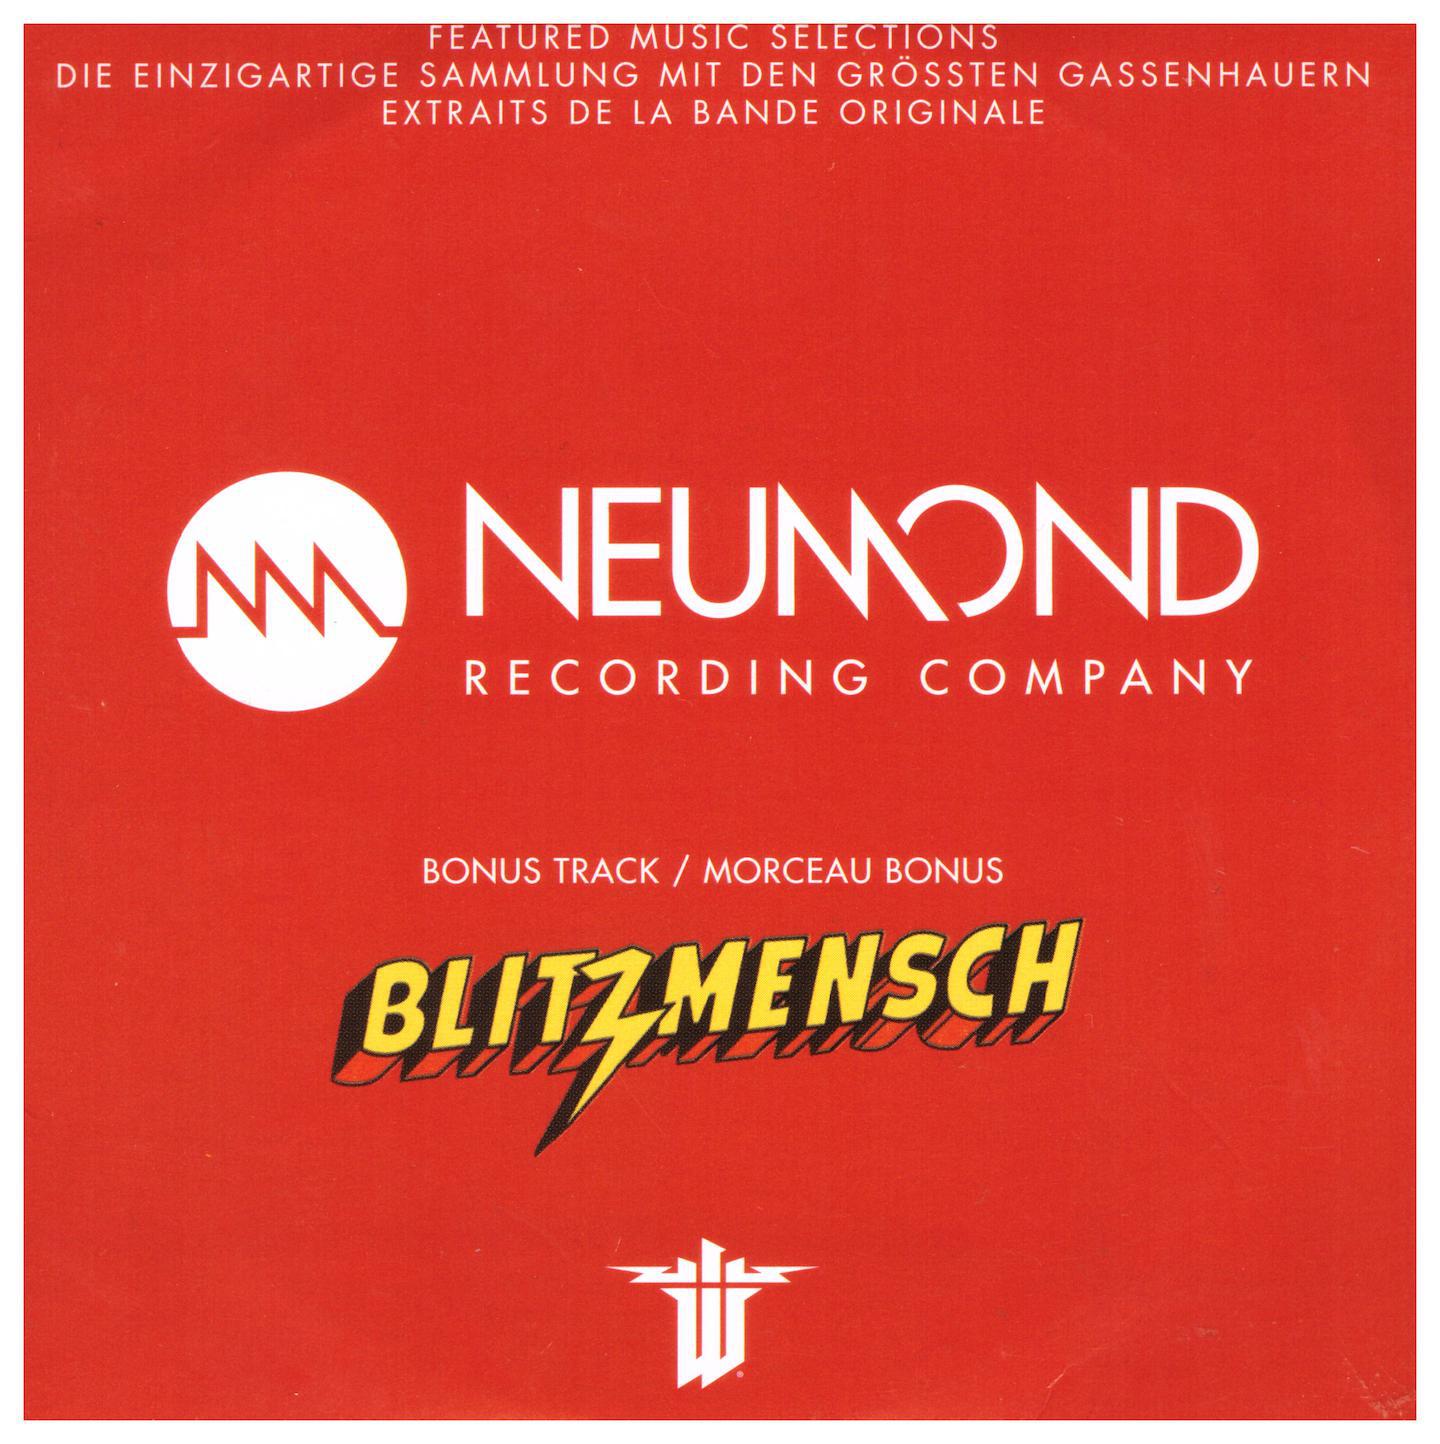 Feature music. Neumond recordings. Wolfenstein II: the New Colossus обложка. Саундтреки вольфенштайн 2. Wolfenstein Soundtrack.